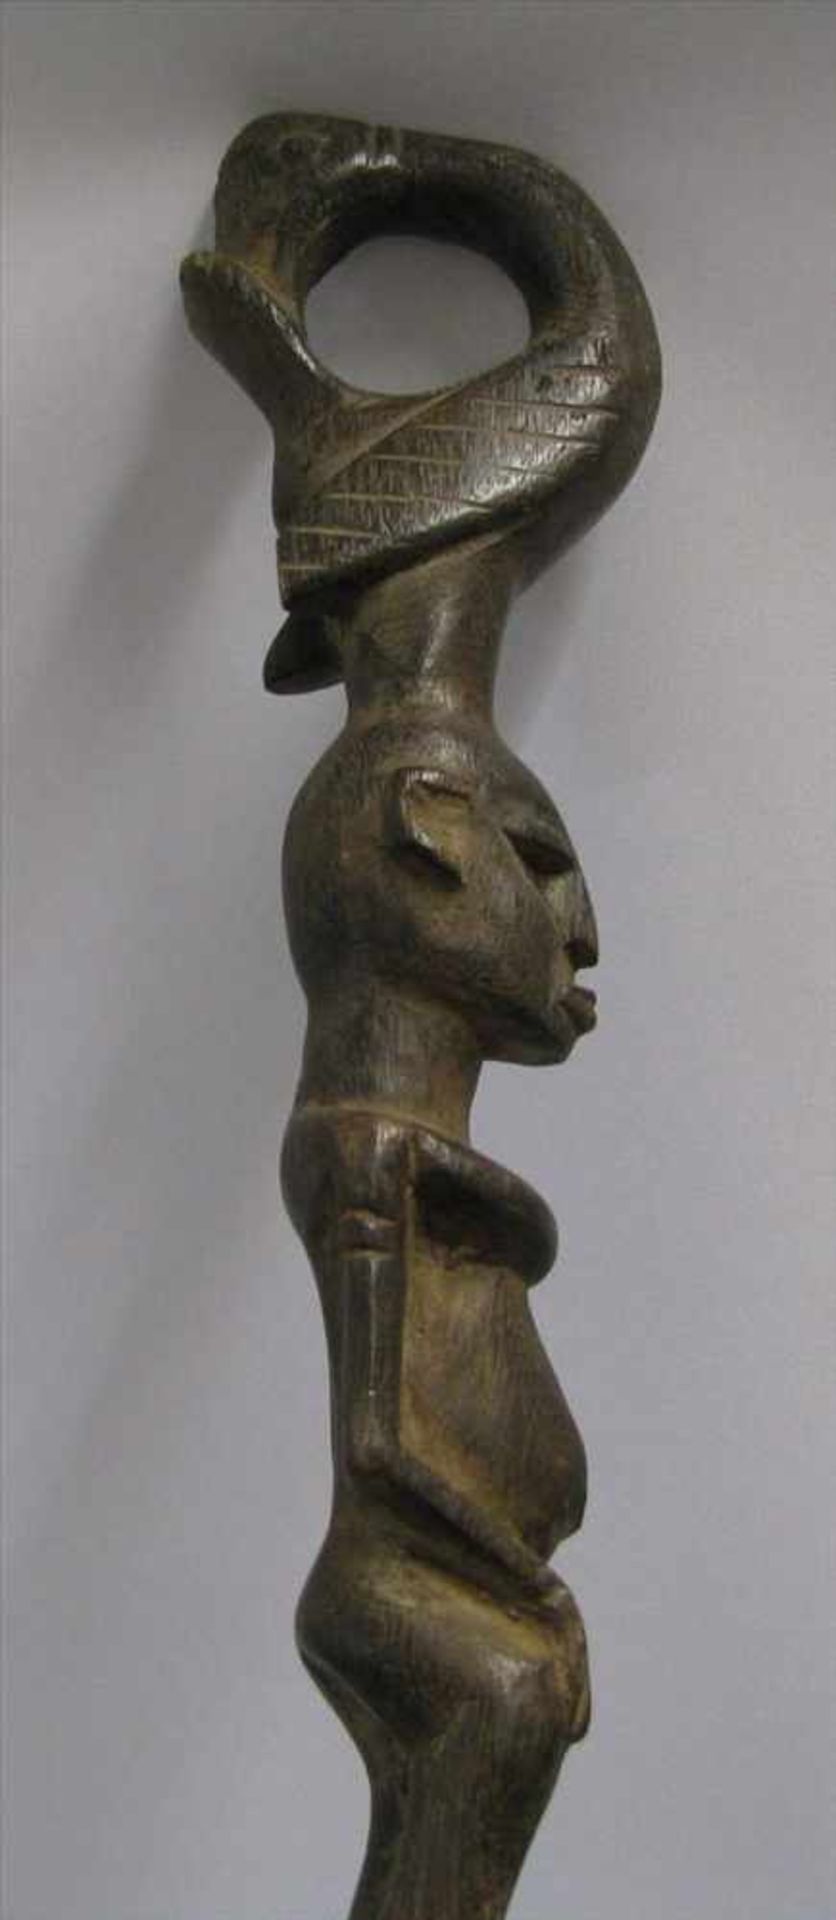 Zeremonienstab, Afrika, Holz beschnitzt, Griff als weibliche Figur mit Vogel, 1 x best., h 91 cm, - Image 2 of 2